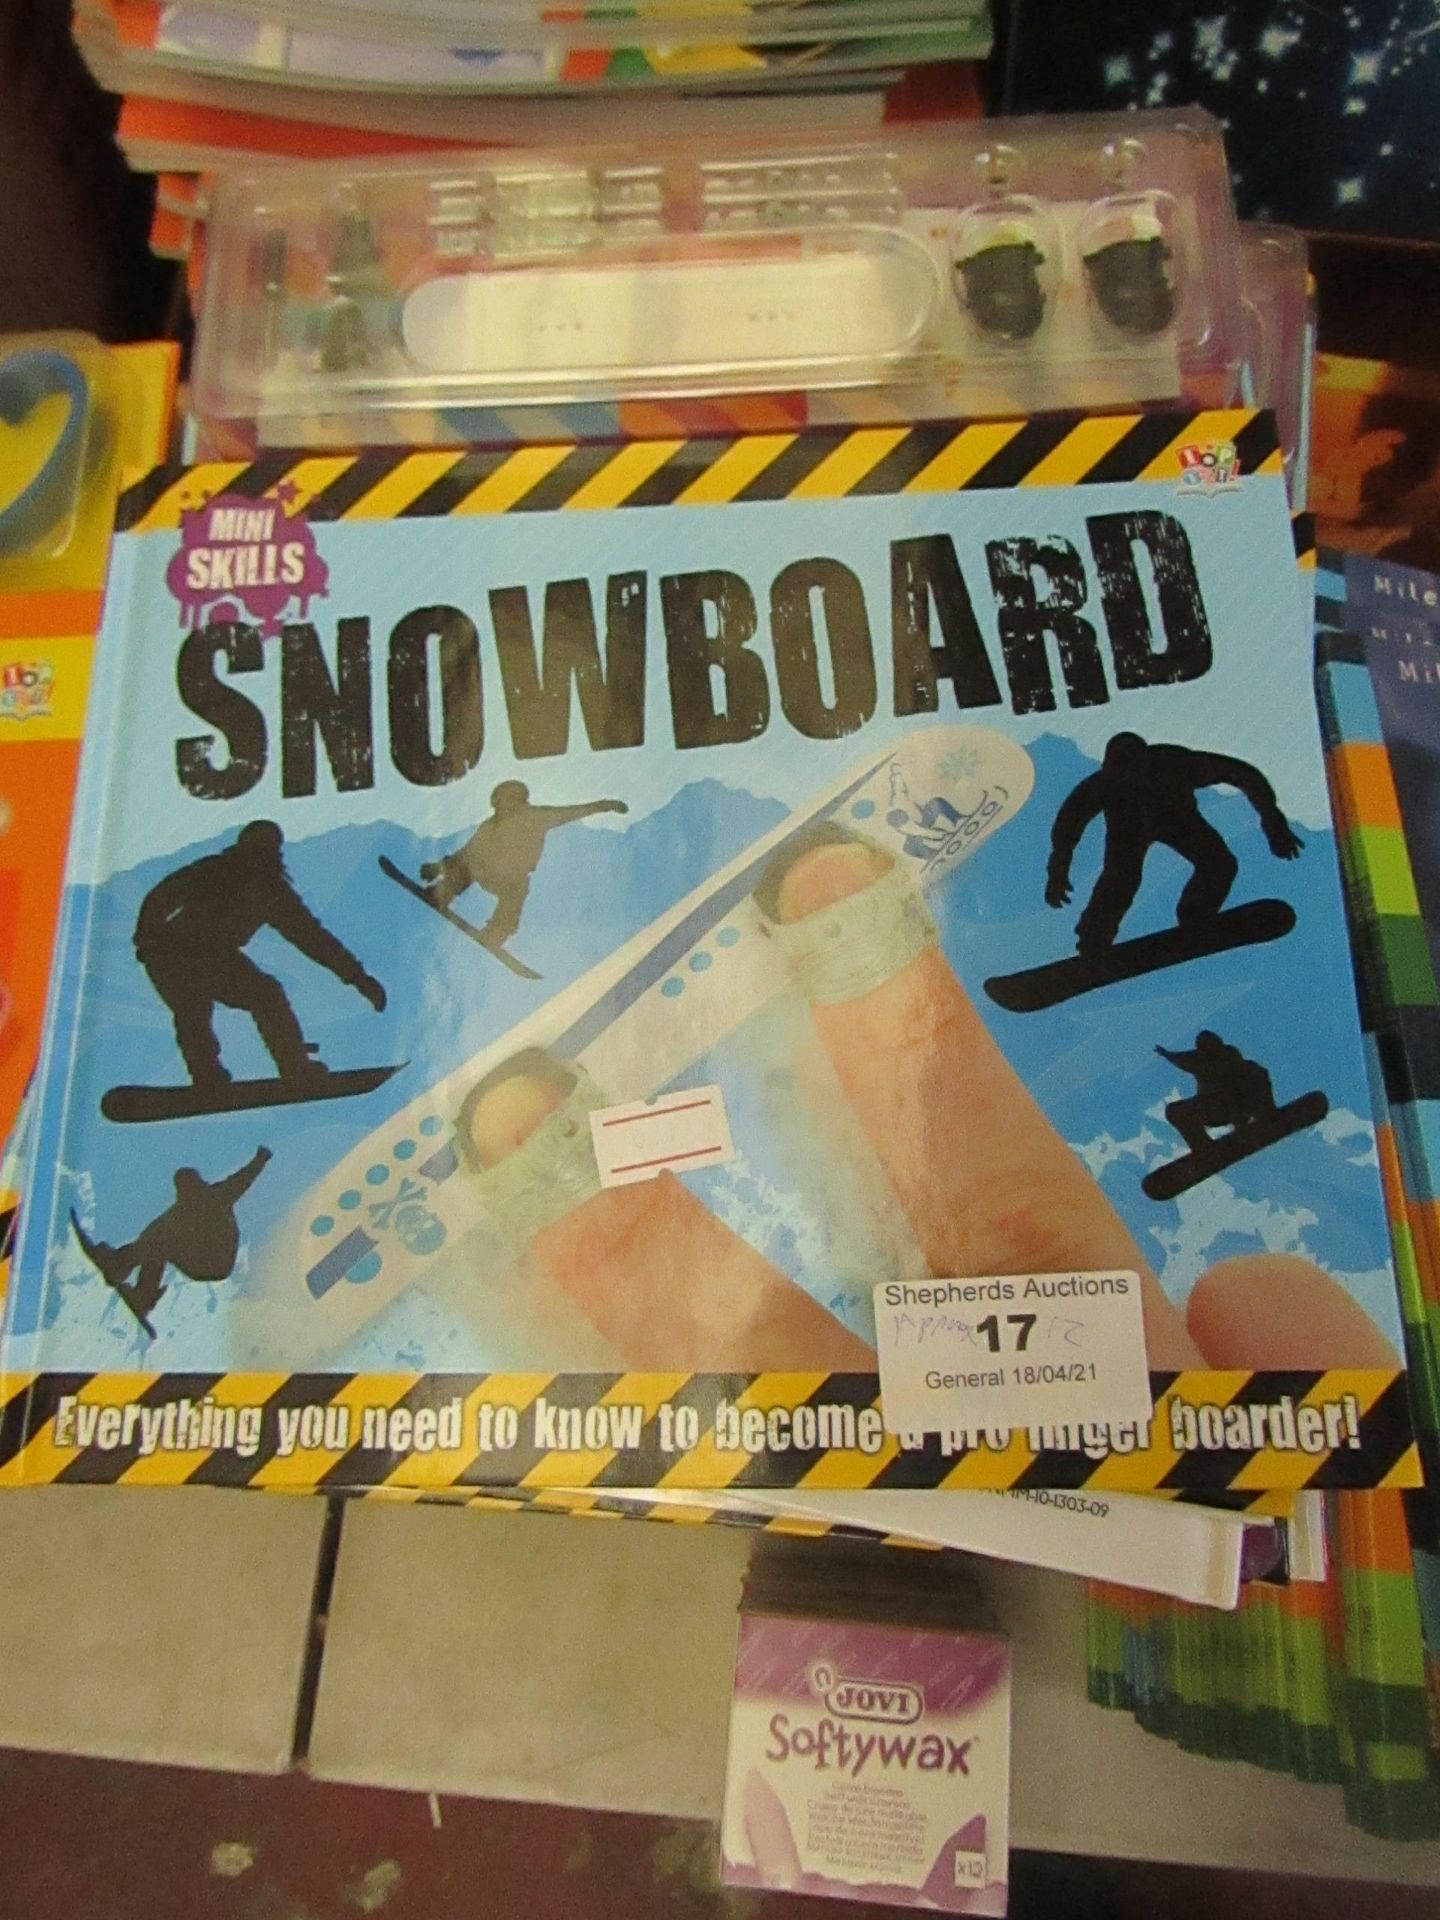 Approx 12x Snowboard mini skills book, new.